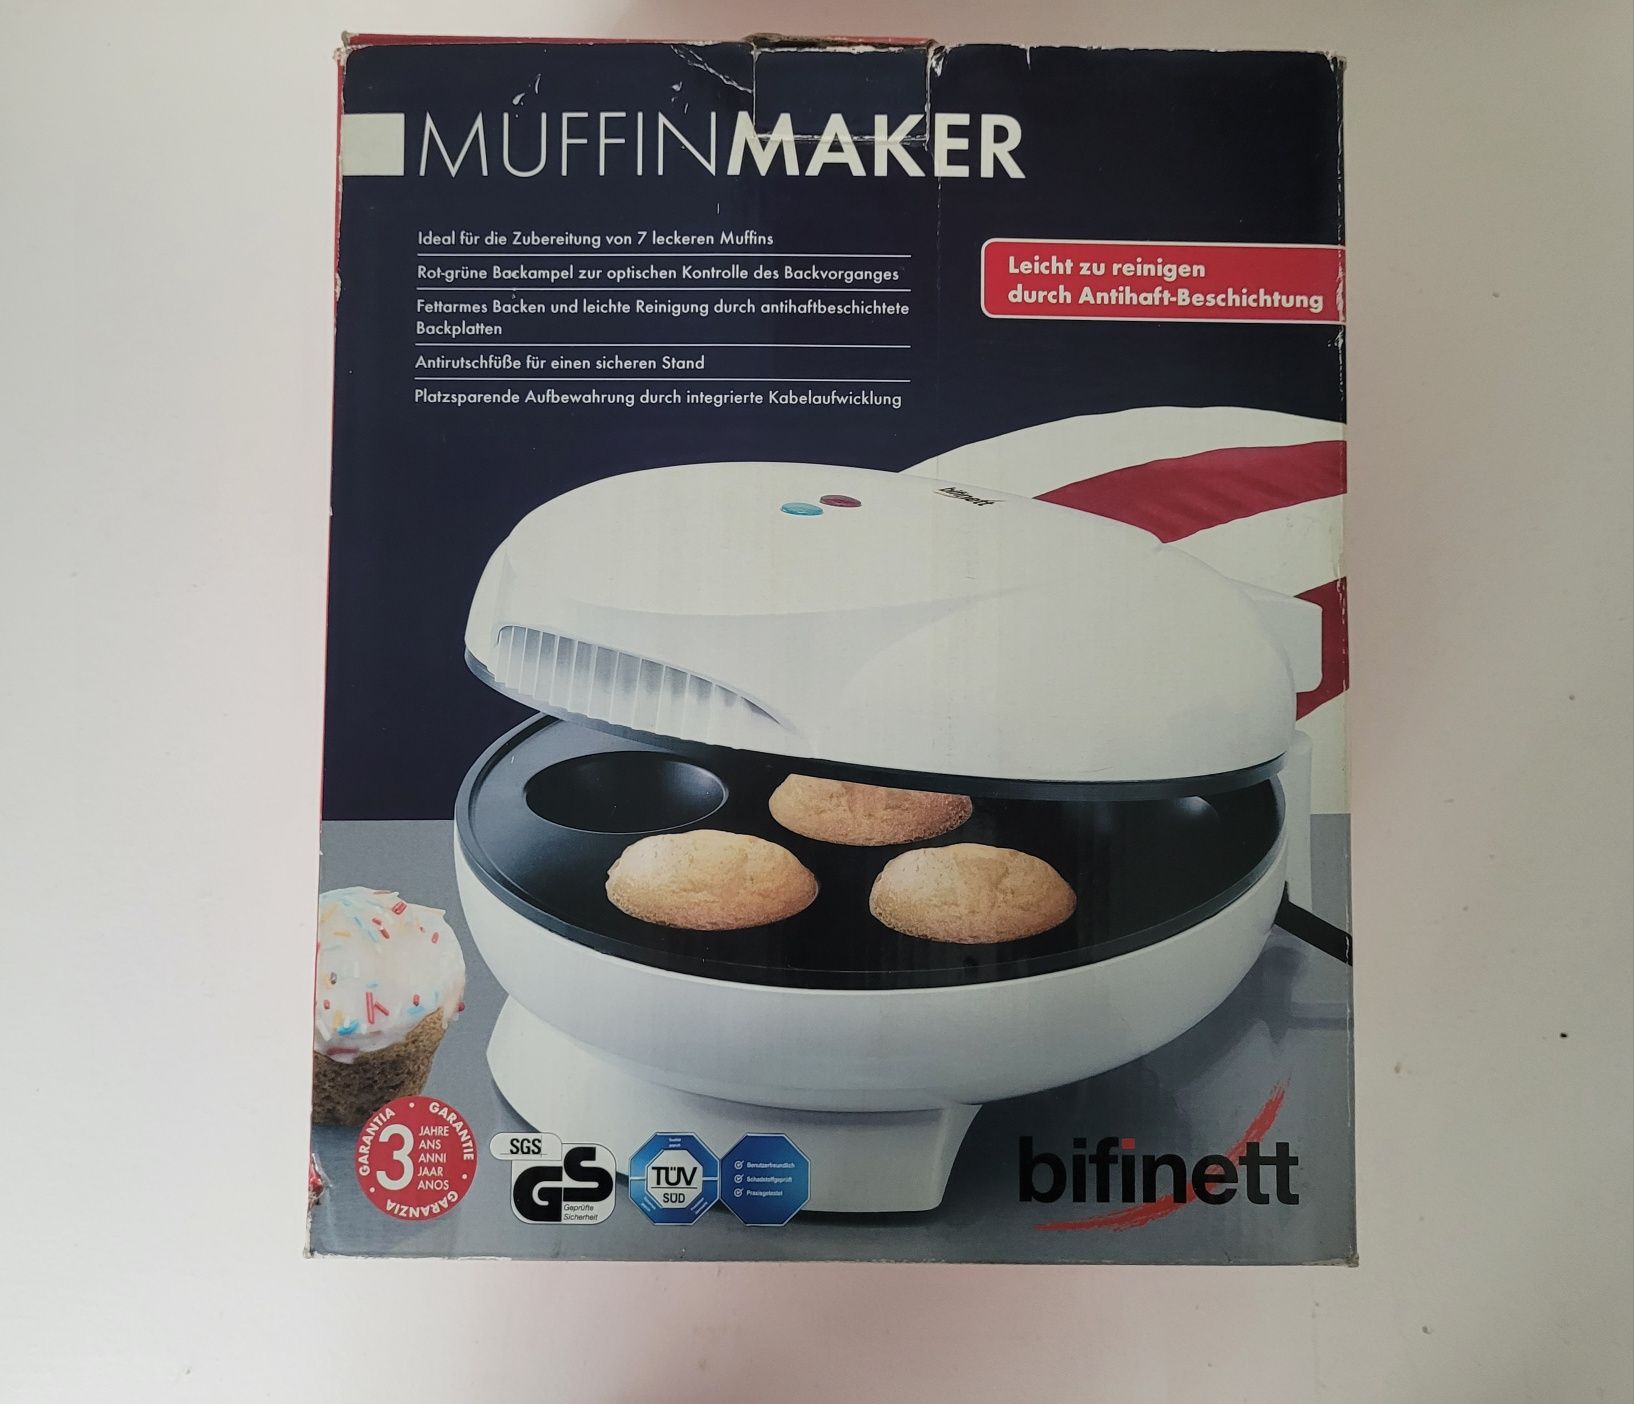 Maszynka do muffinów